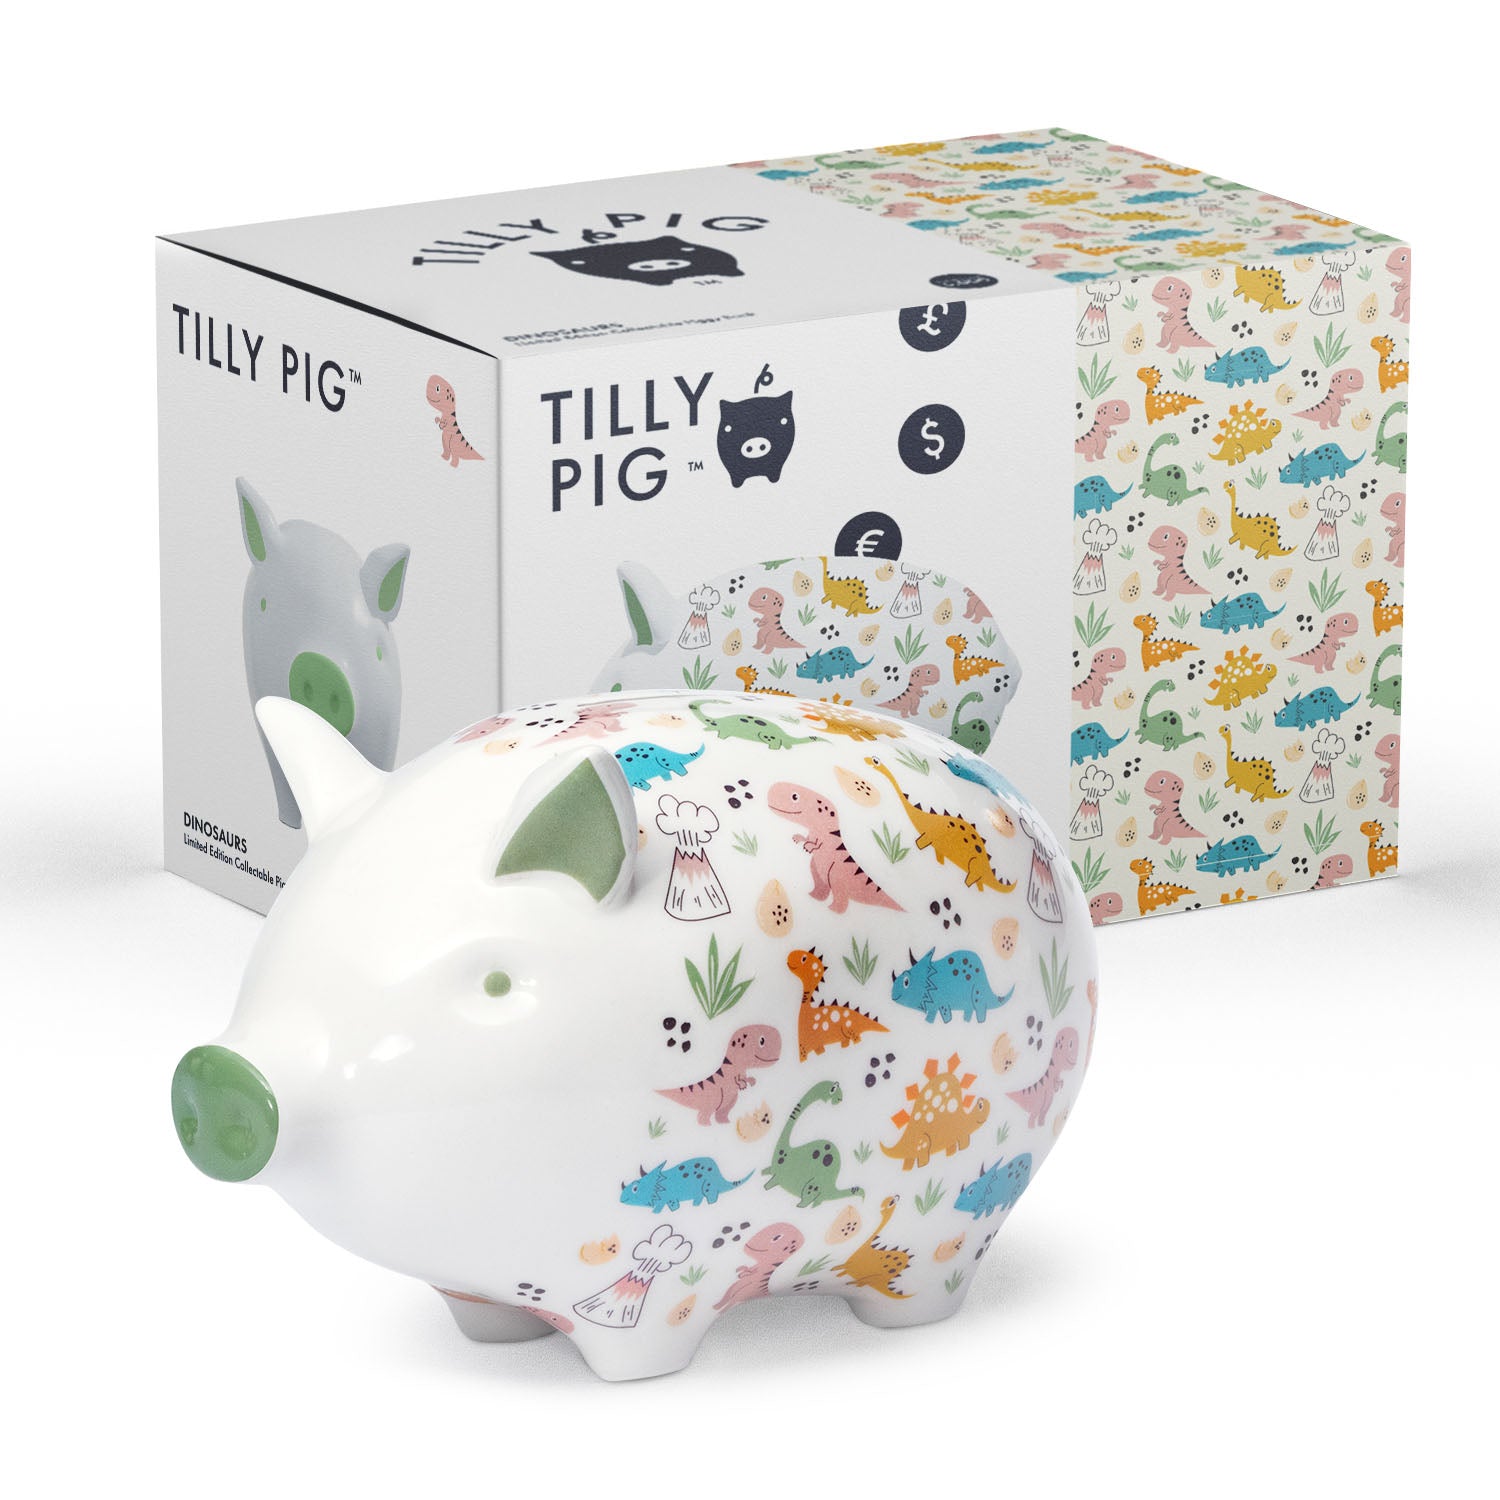 Tilly Pig - Dinosaurs Piggy Bank